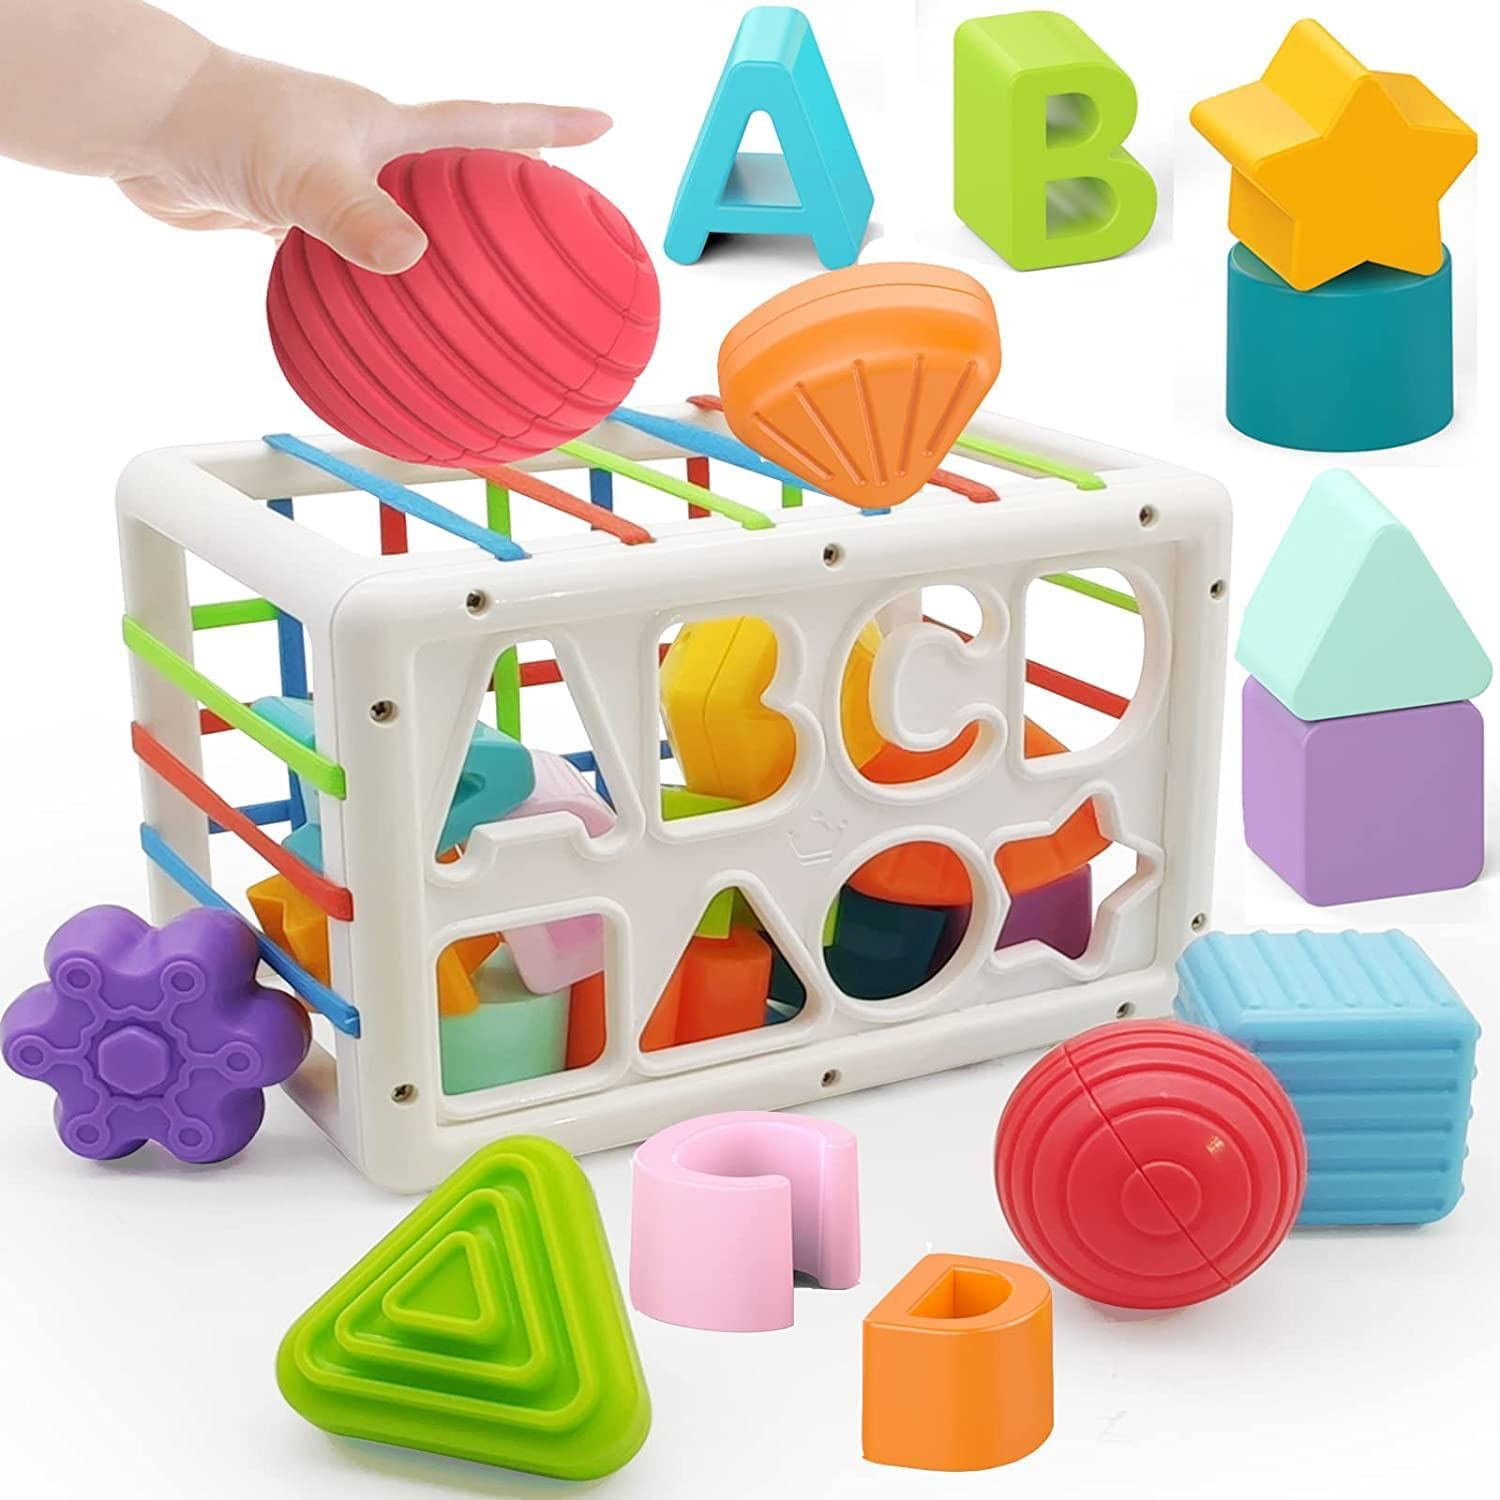 ベビーおもちゃ 形合わせおもちゃ 教育おもちゃ 赤ちゃん おもちゃ 知育玩具 指先知育 ブロック 図形認知 色認識 感覚玩具 遊び入園祝い 出産祝い プレゼント ギフト 0歳以上